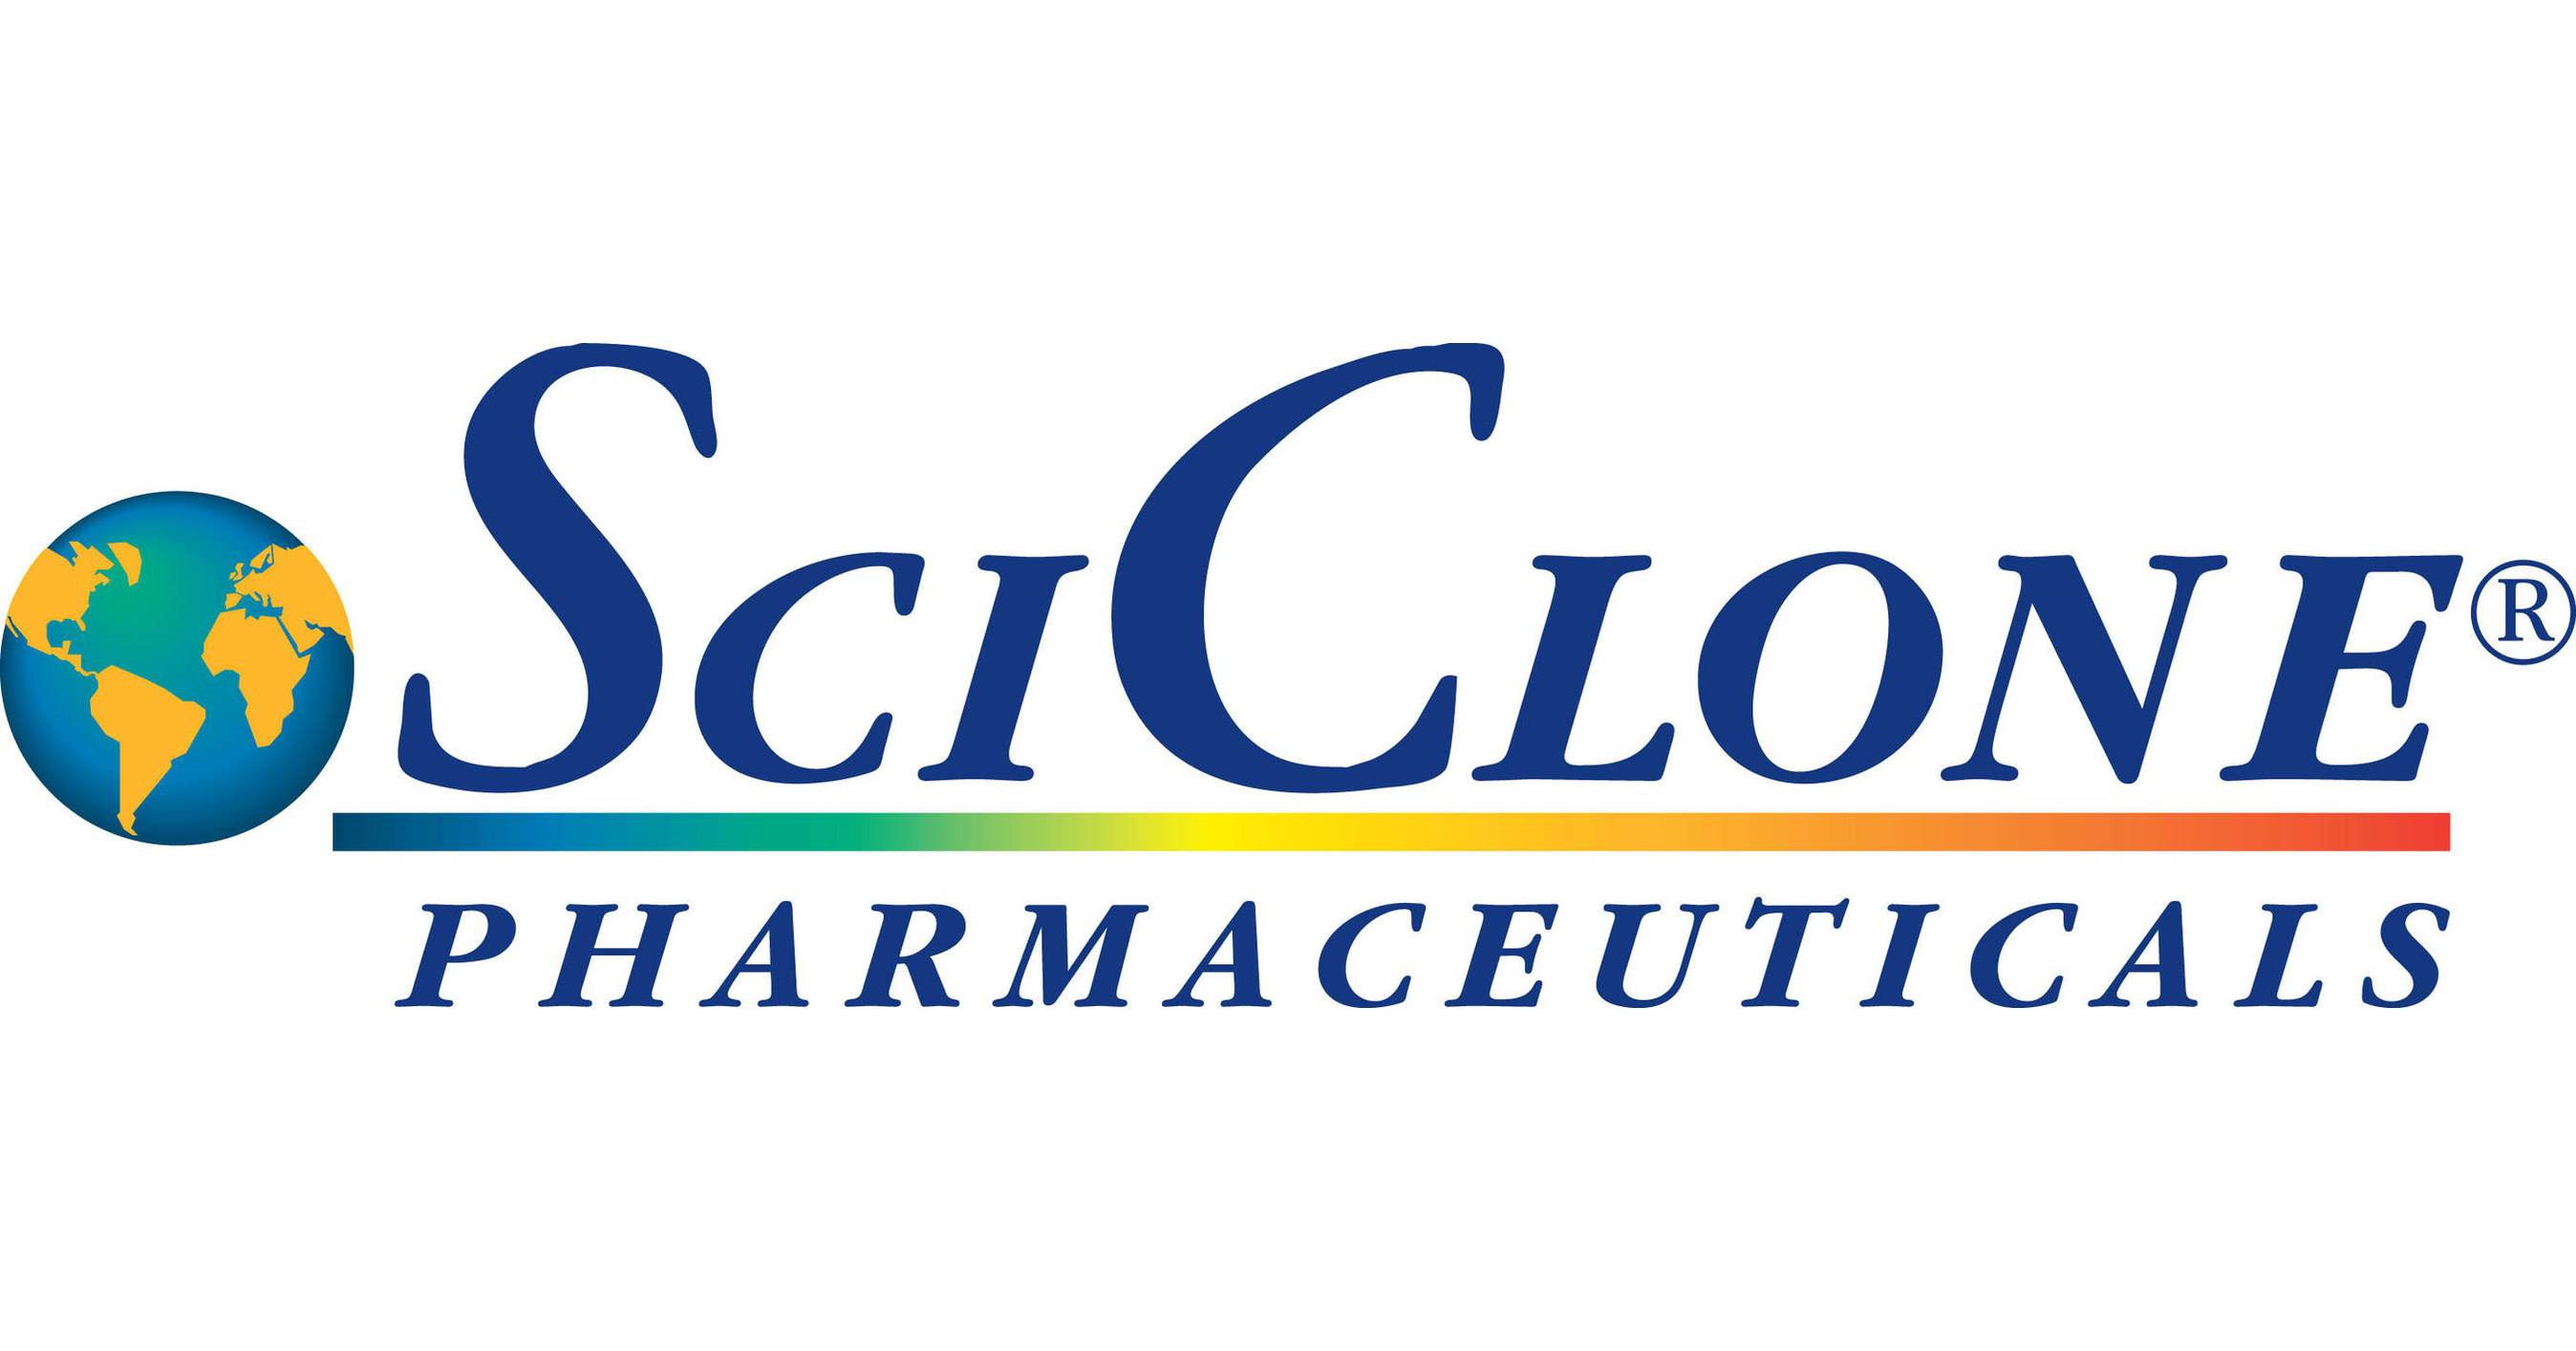 Sciclone Pharmaceuticals